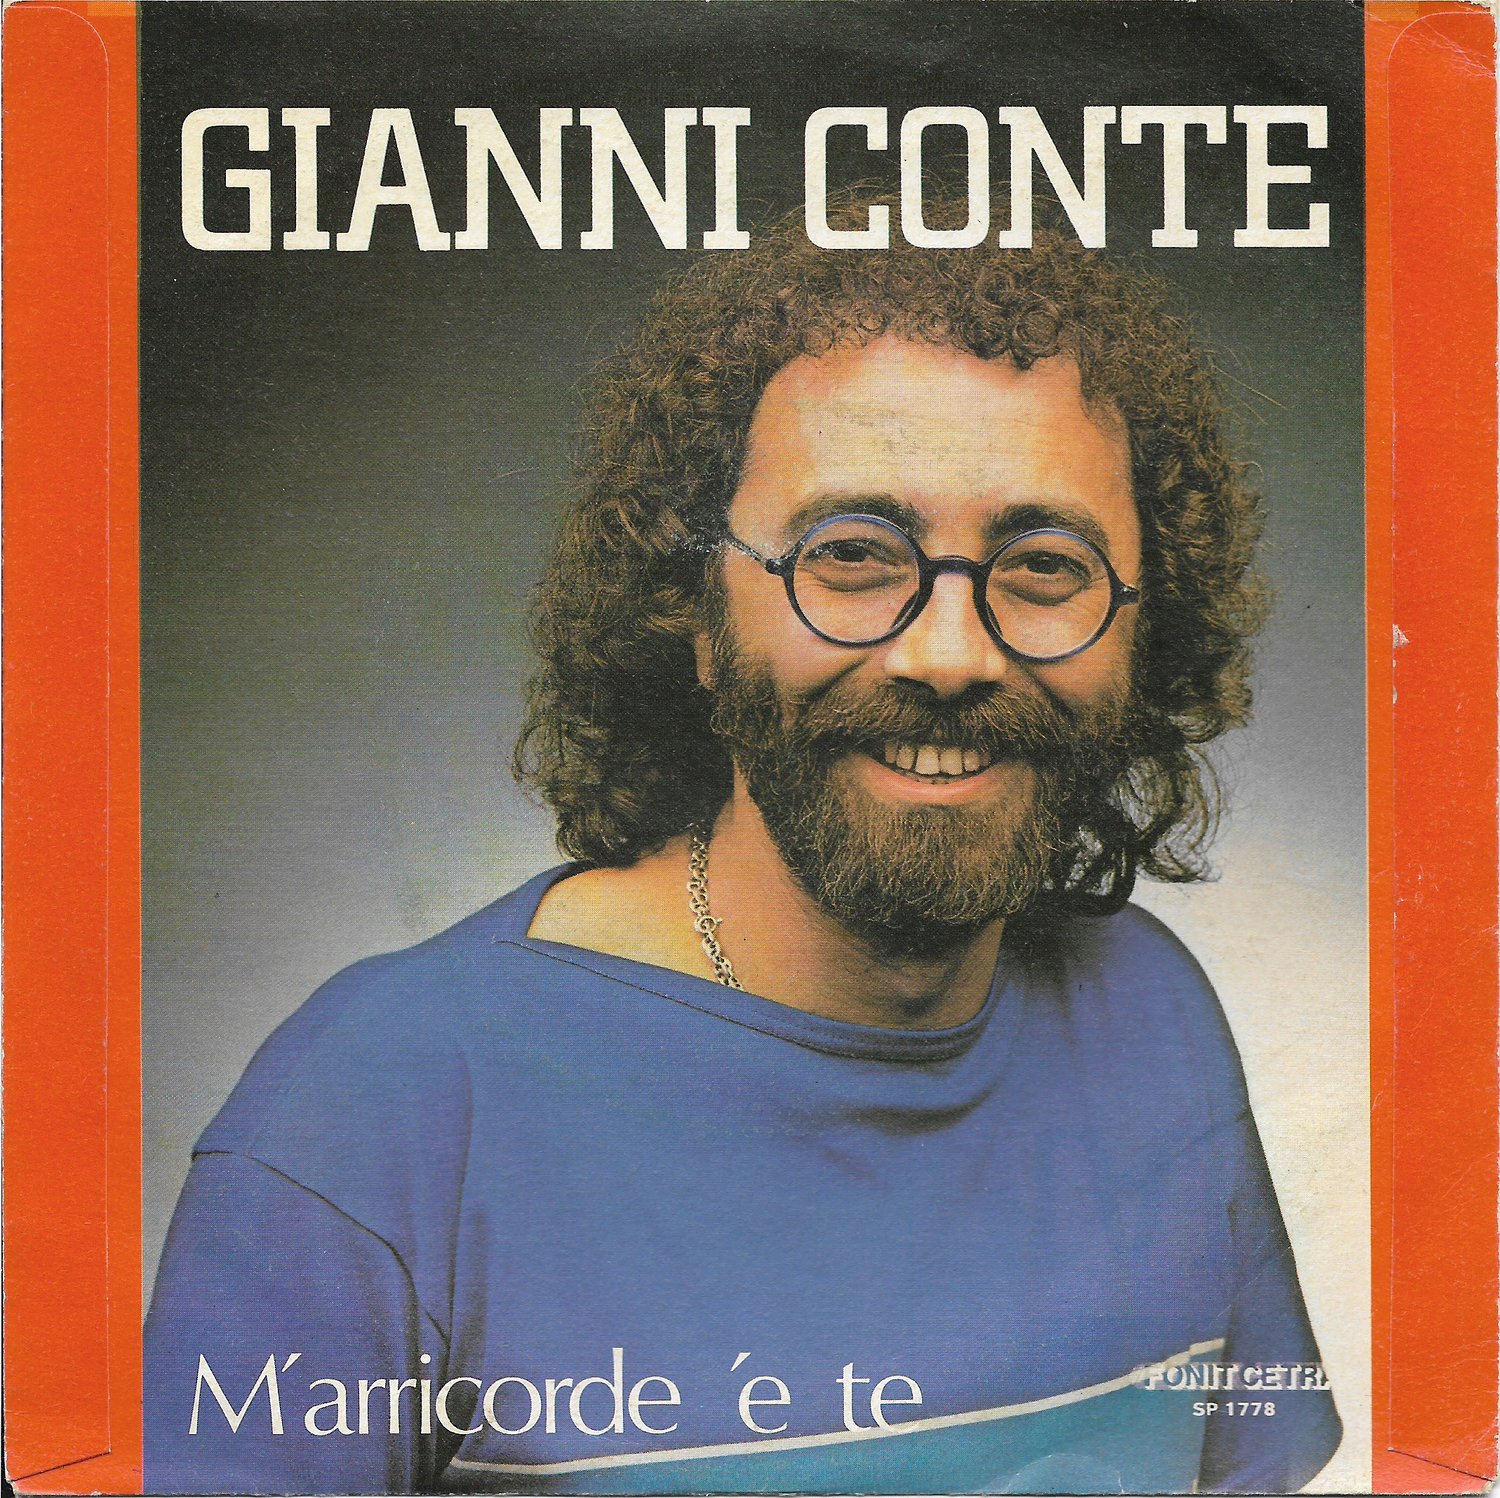 Gianni Conte - Tu